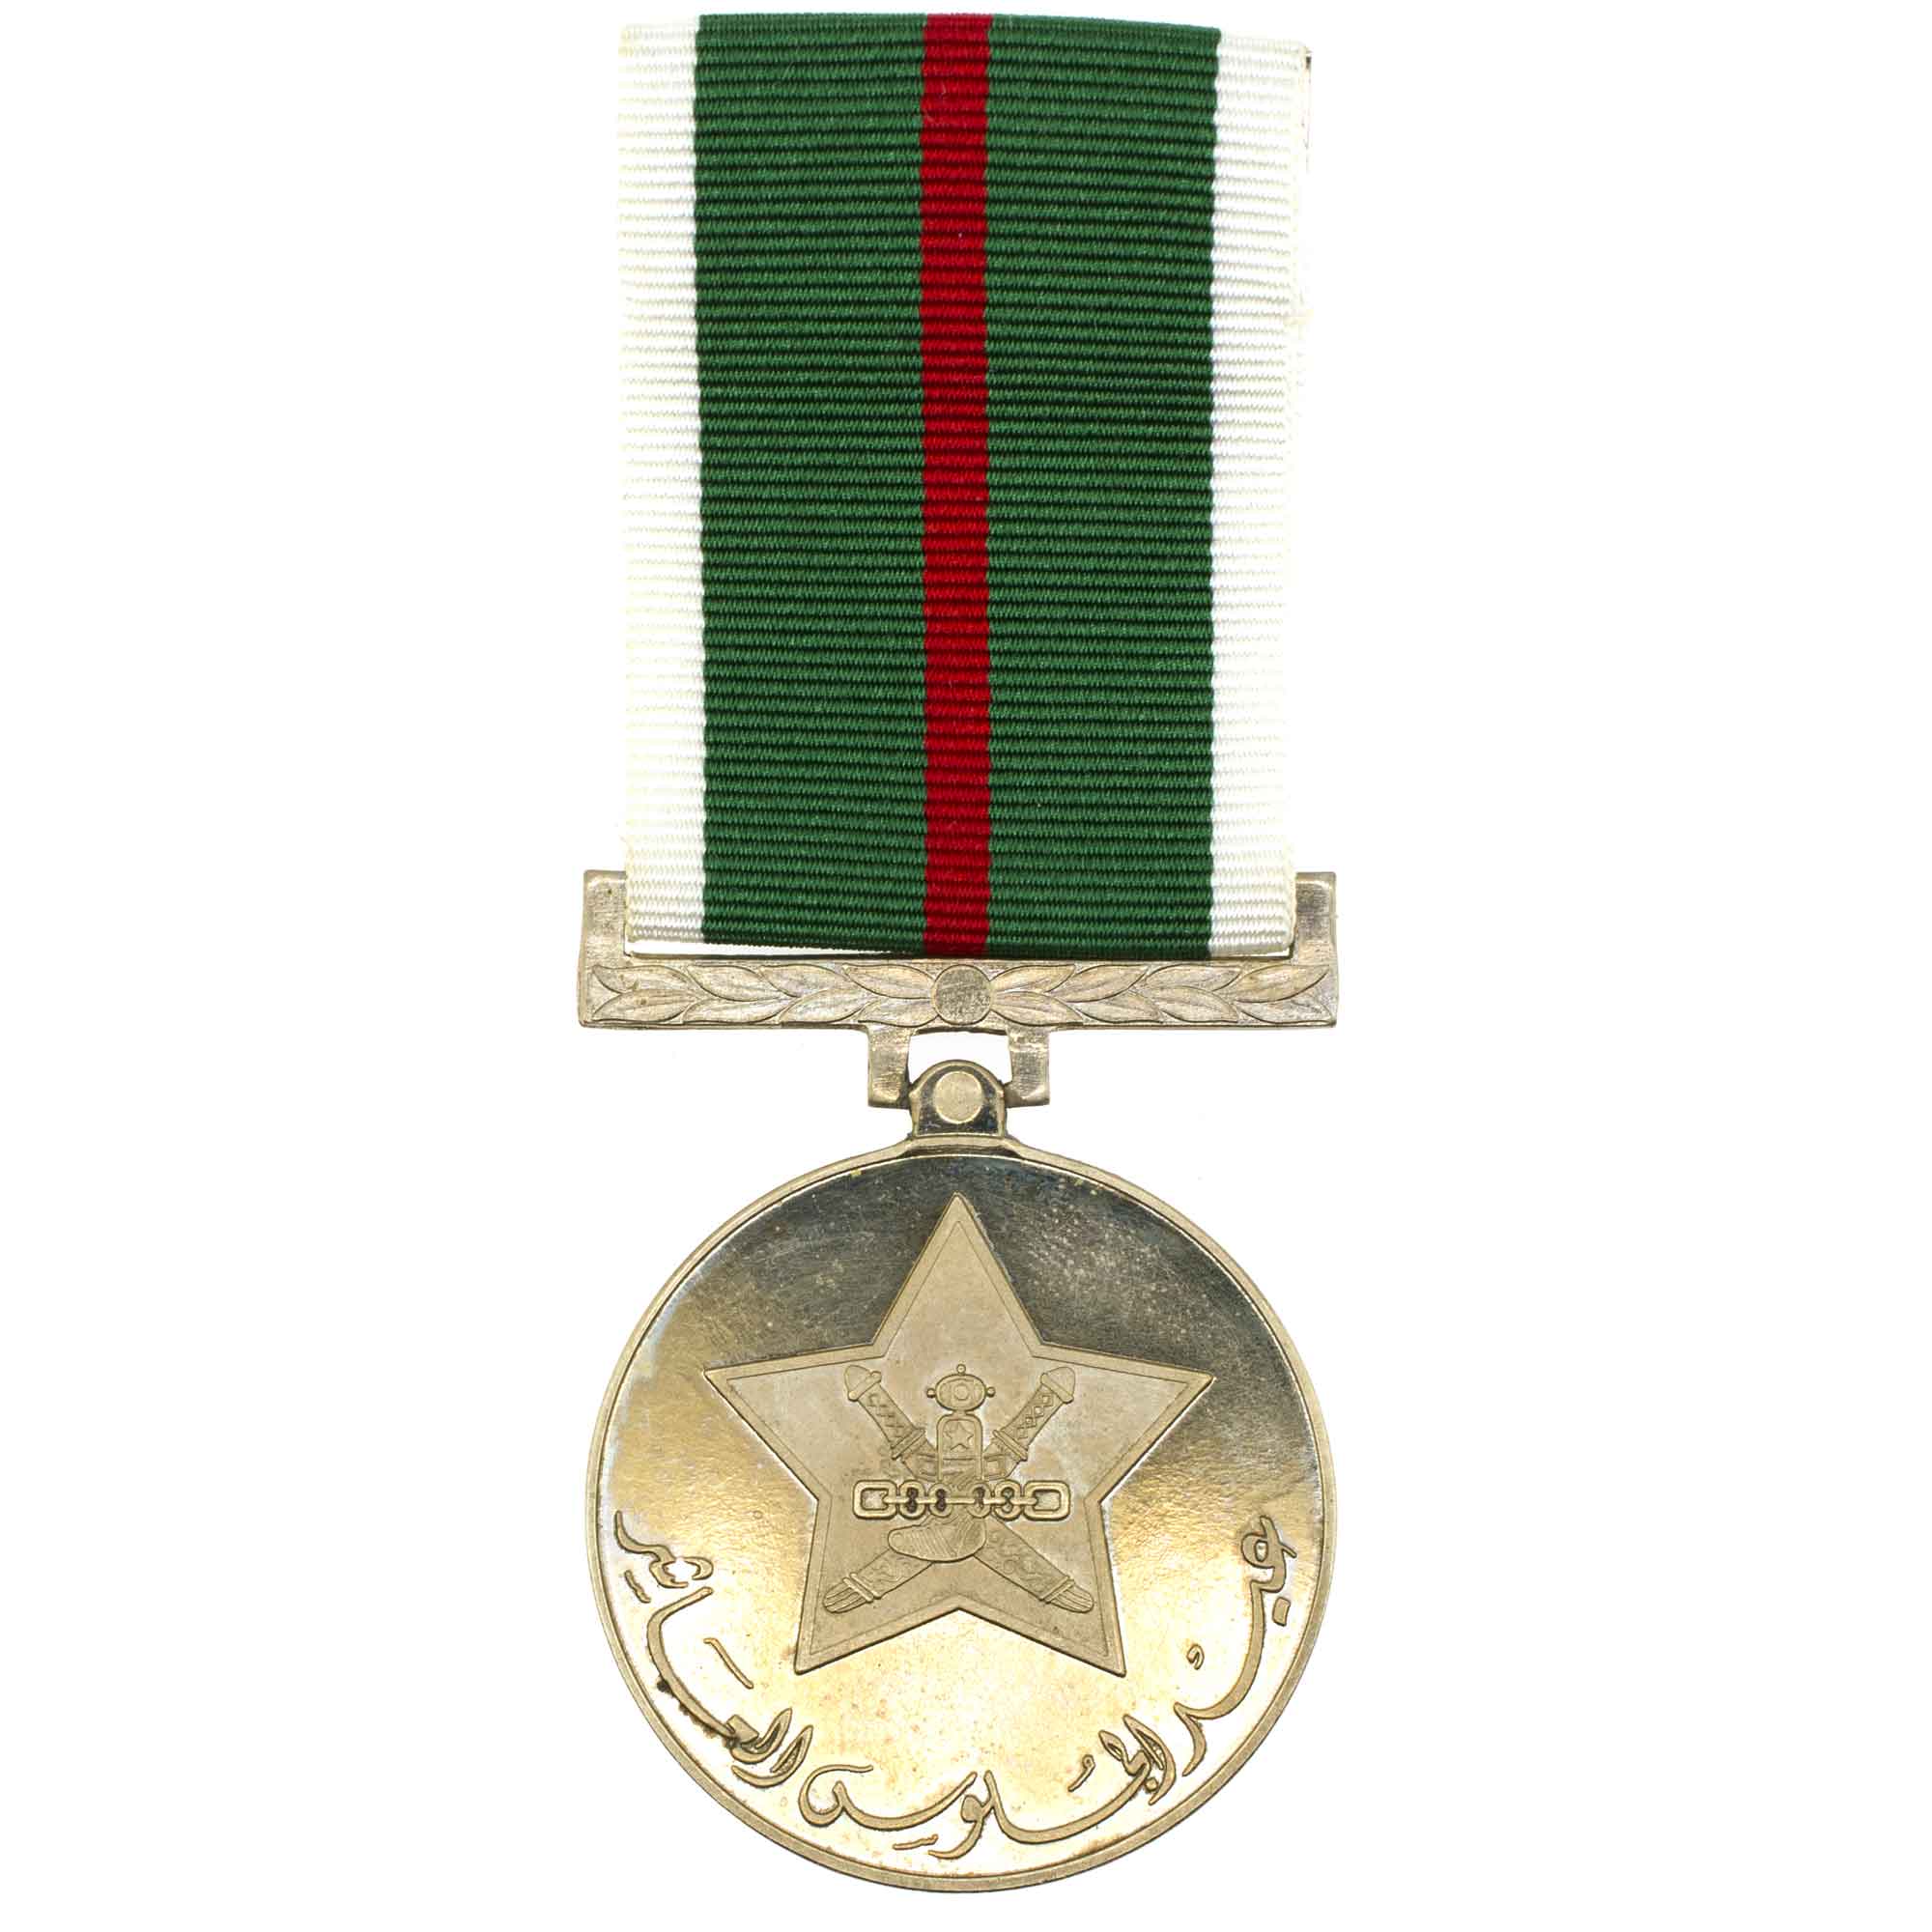 Оман. Юбилейная медаль 10 - й годовщины восшествия султана на престол Омана в 1970 году.